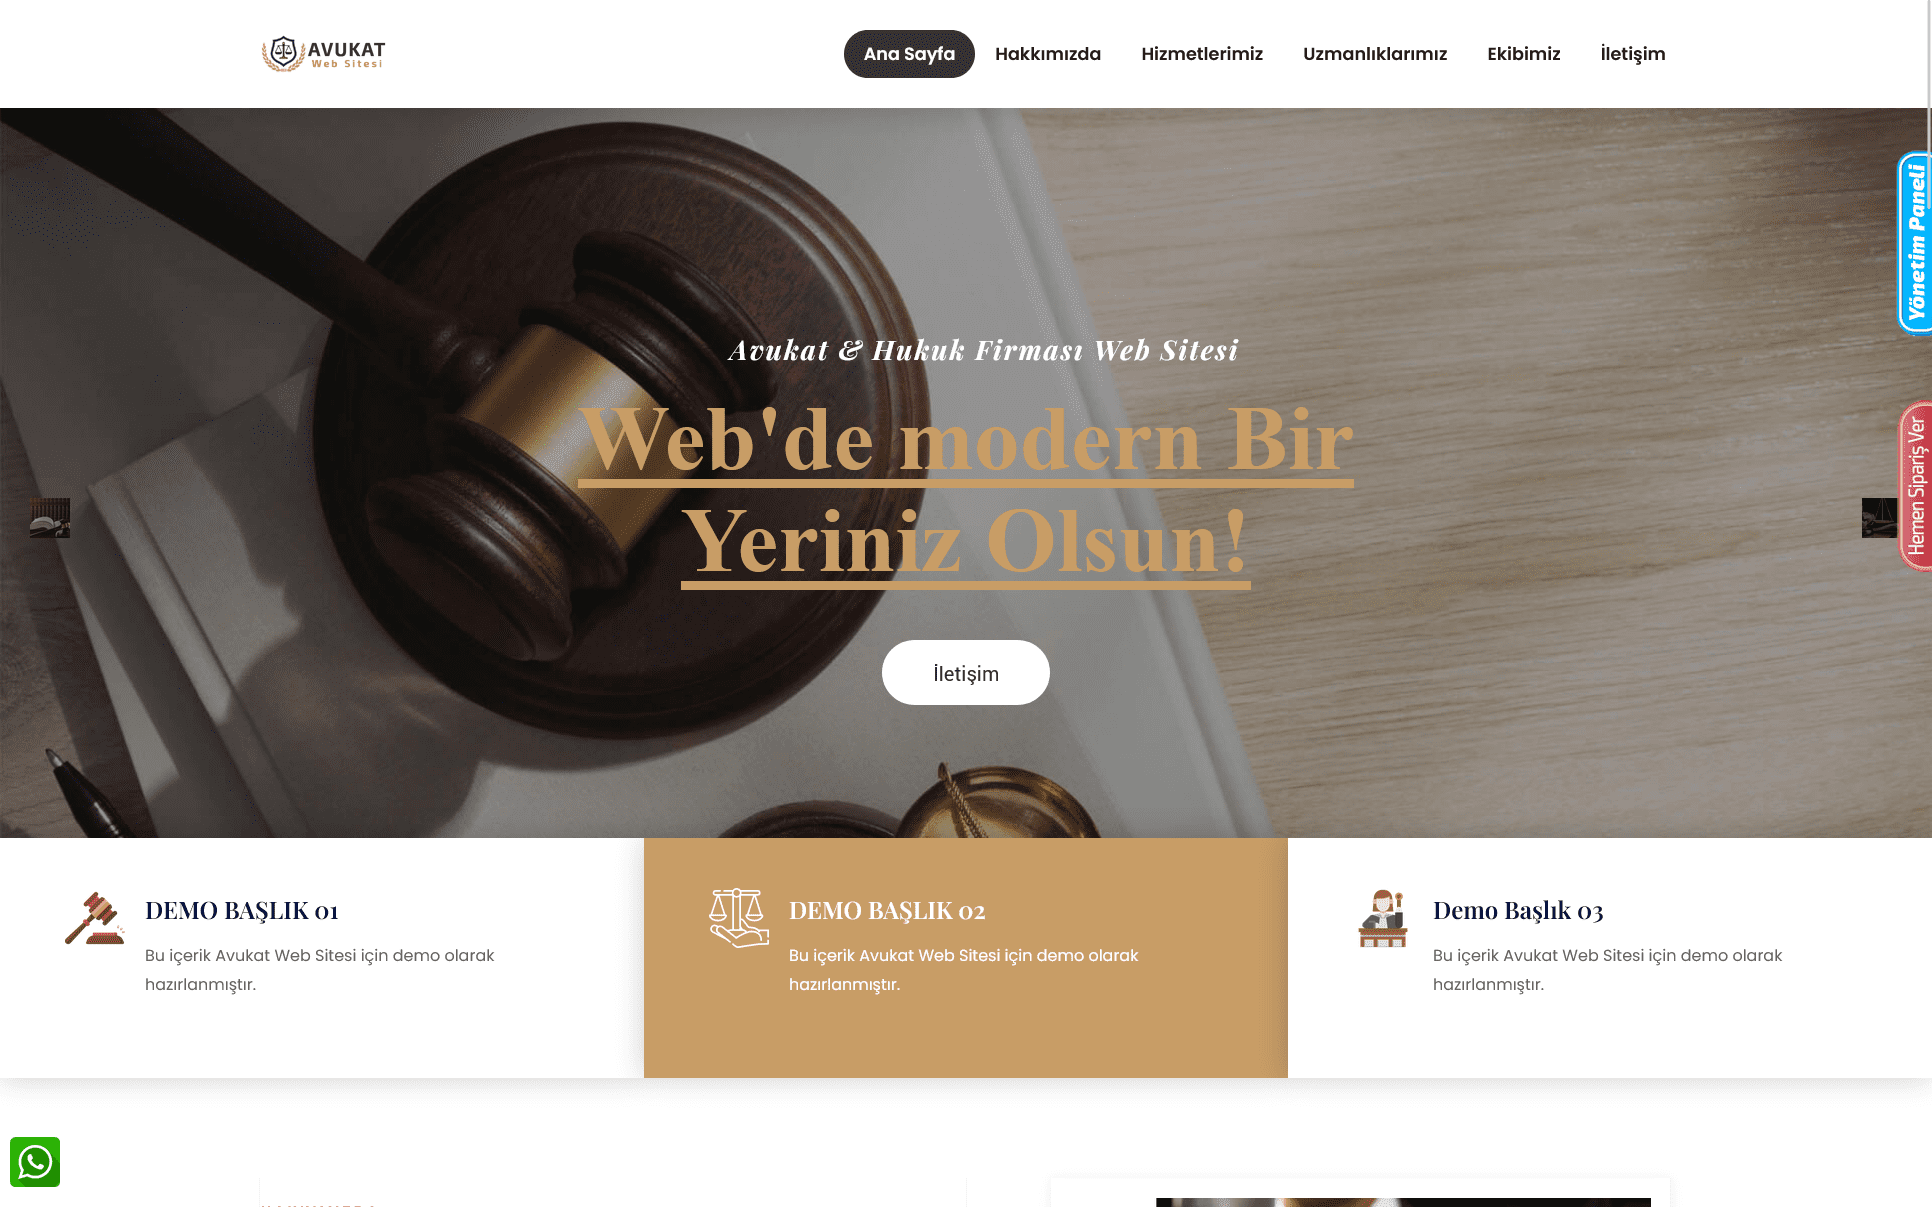 Avukat Web Sitesi - Hukuk Firması Web Sitesi 080